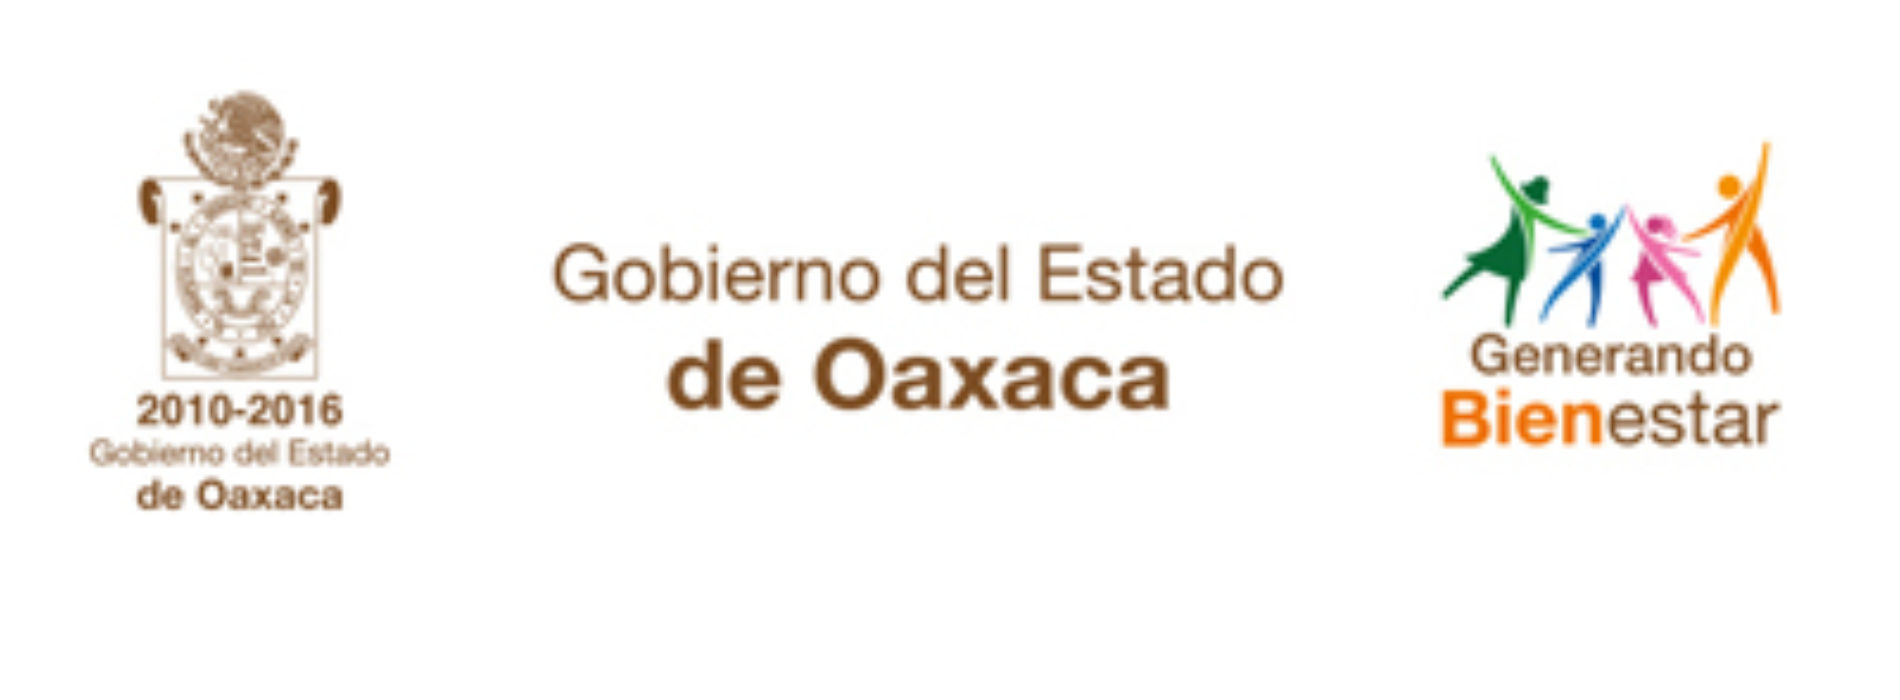 Poder Ejecutivo de Oaxaca entrega este martes Sexto Informe de Resultados al Honorable Congreso del Estado